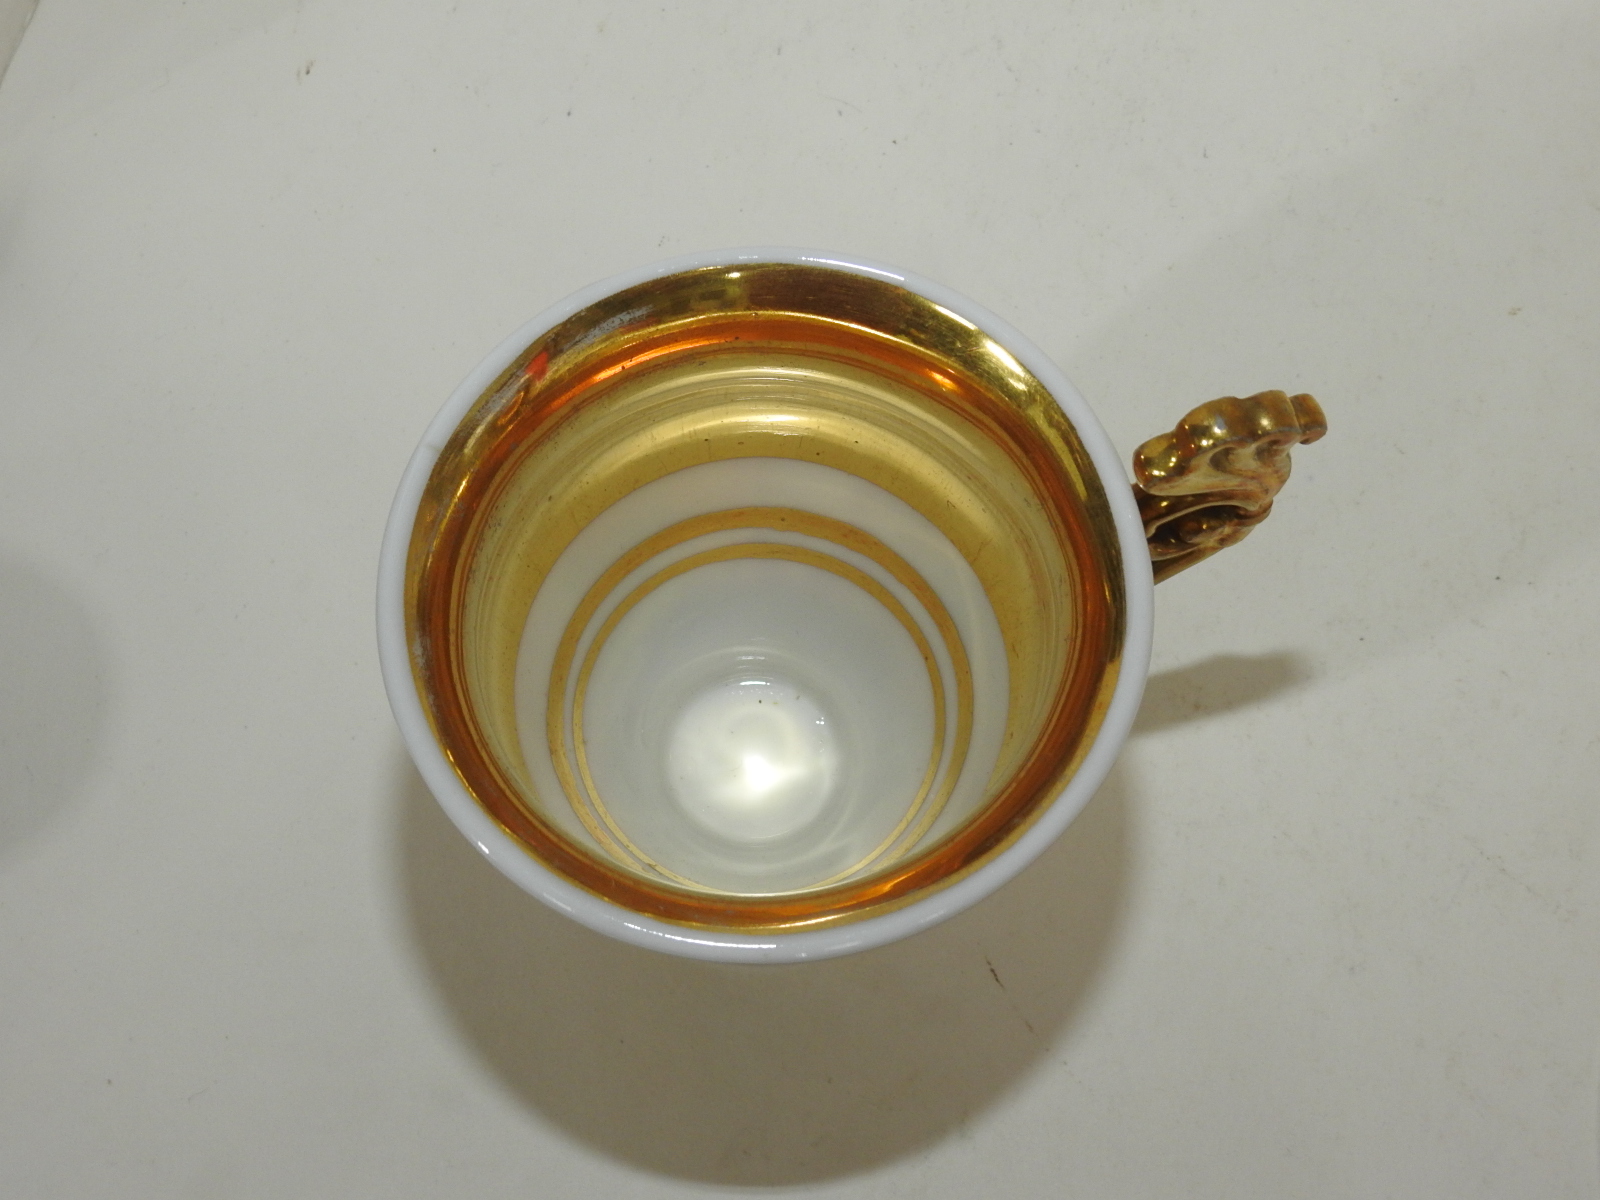 초창기 본챠이나 금채화문 커피잔셋트